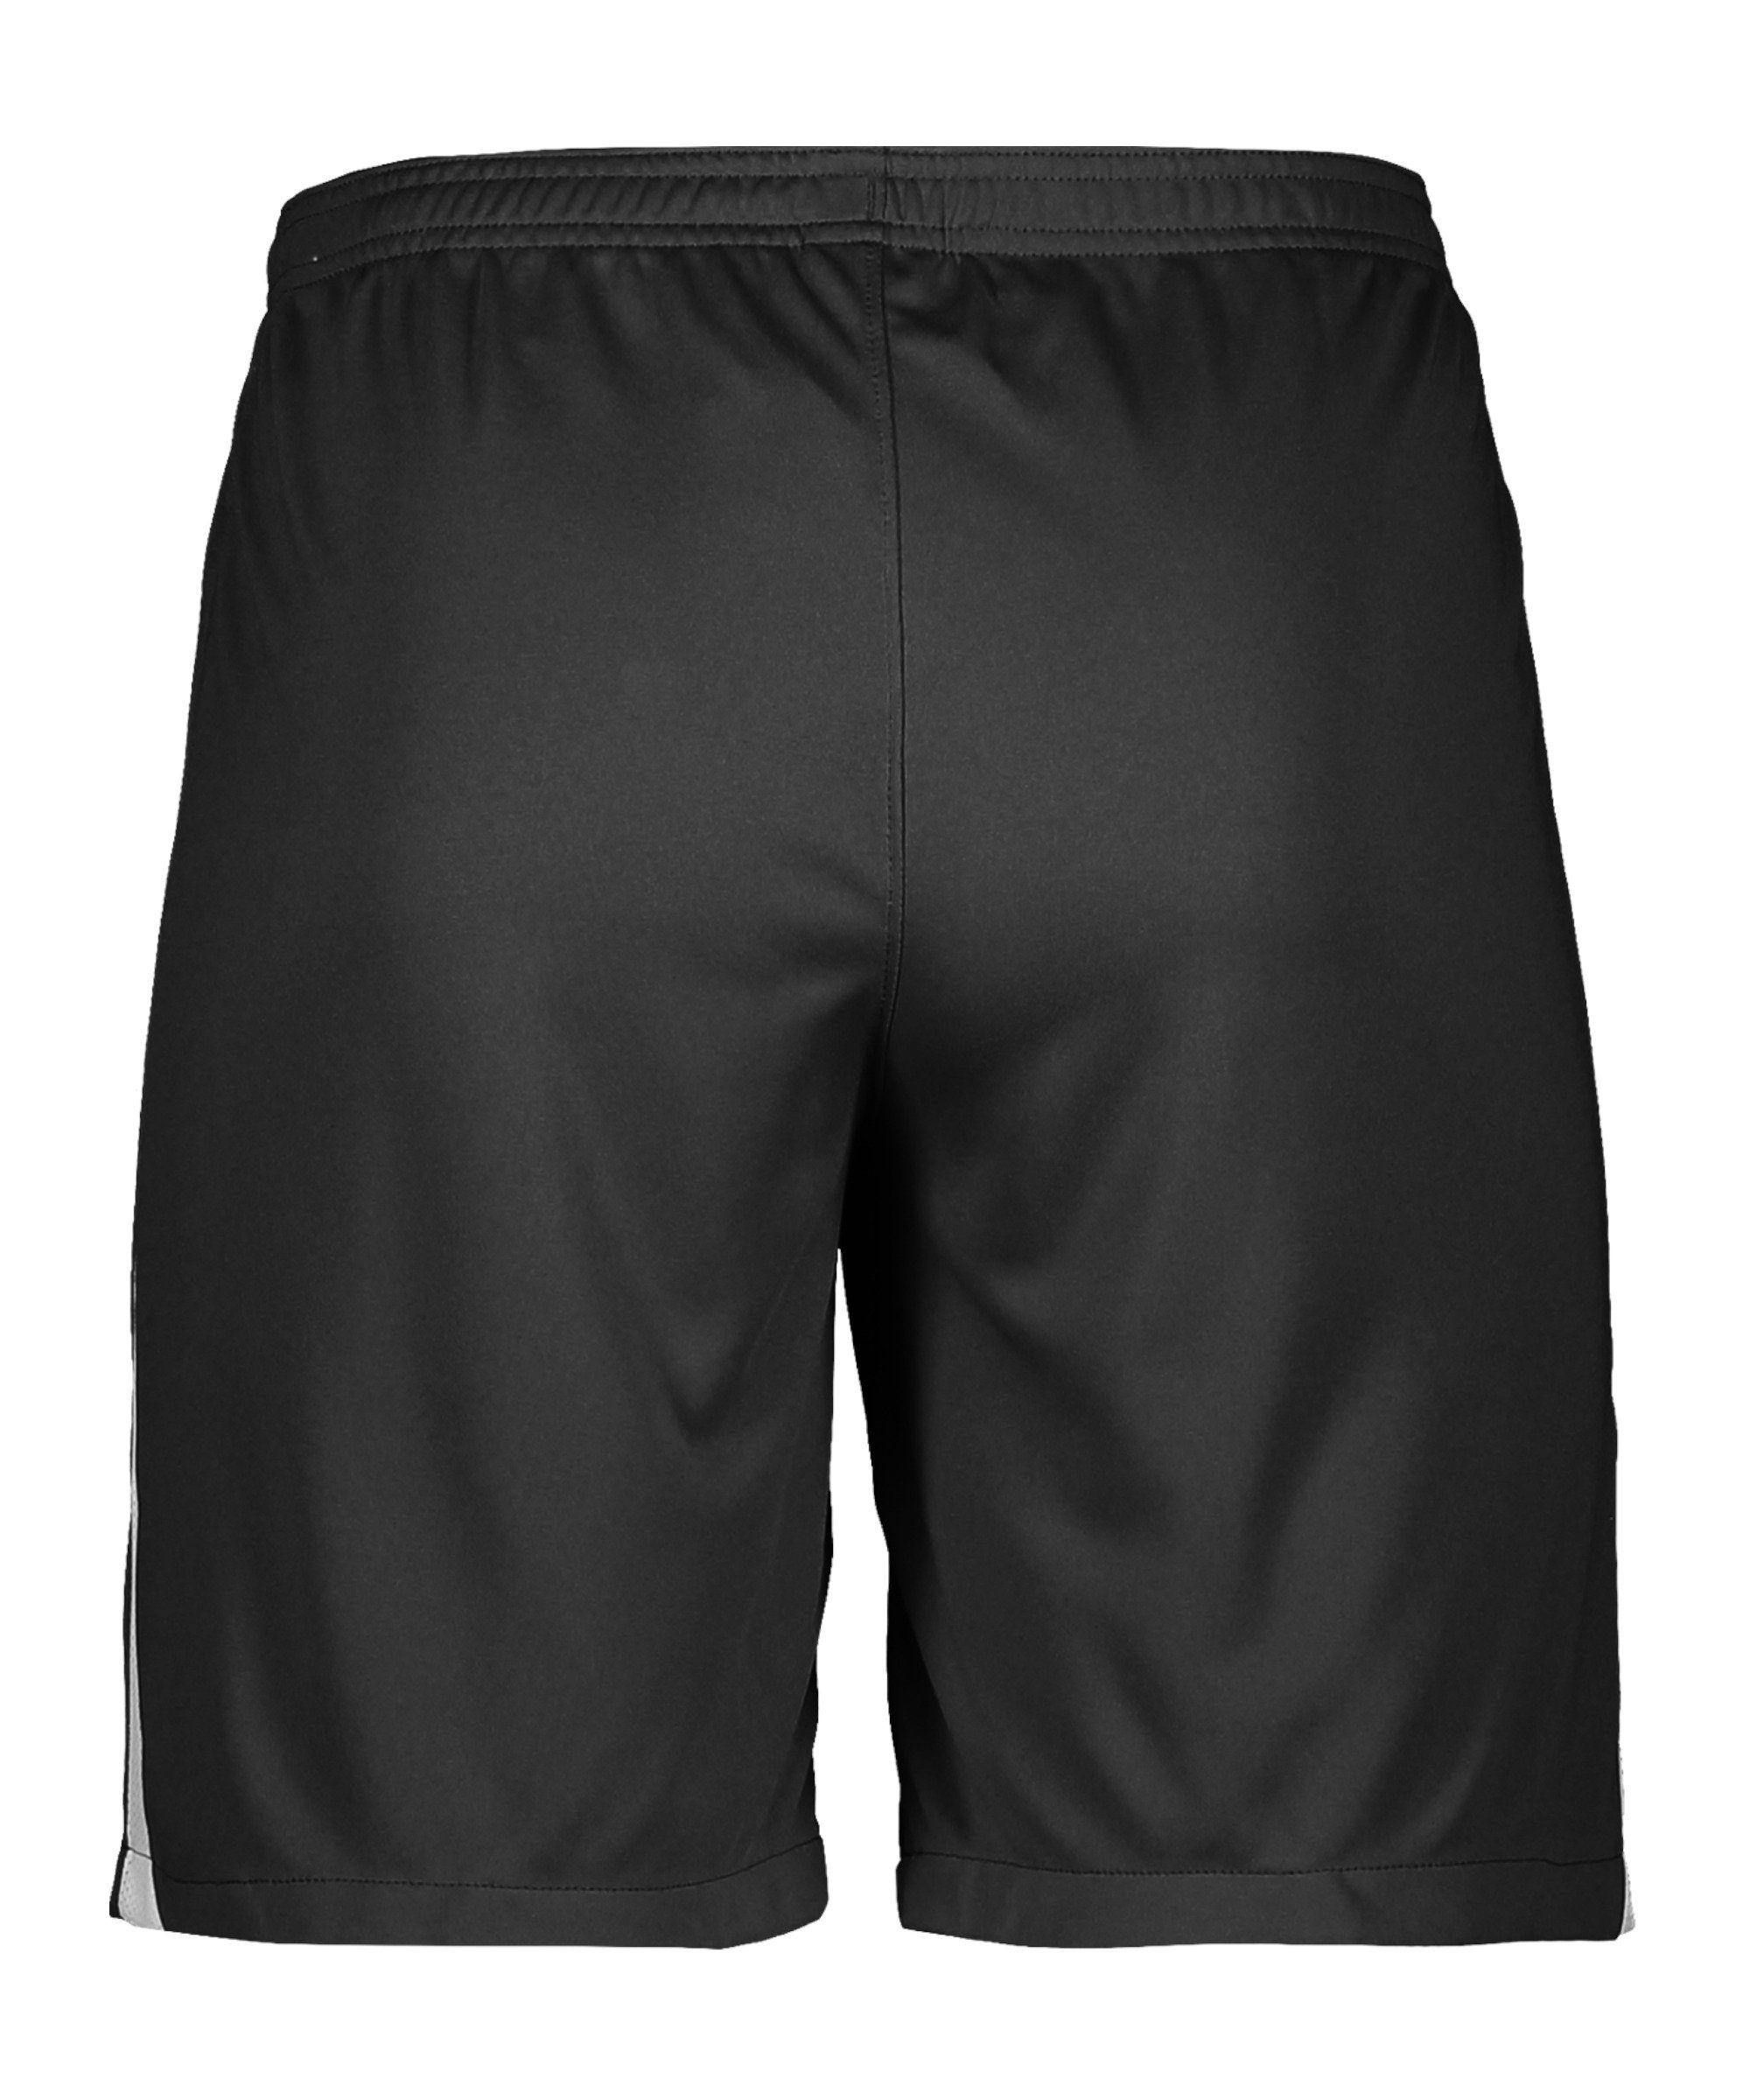 Nike Sporthose League Short schwarzweissweiss III